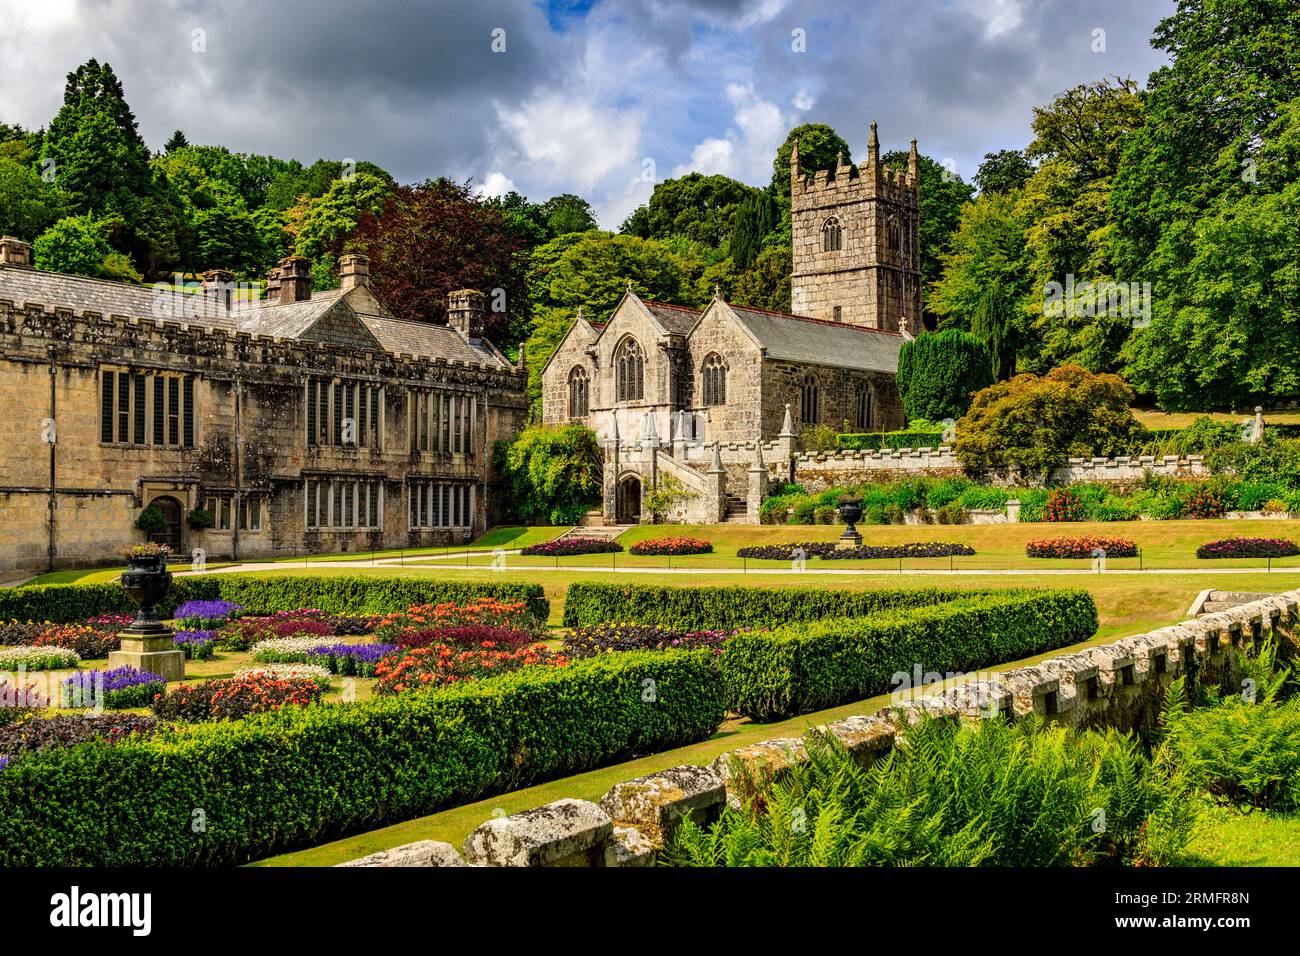 Die Pfarrkirche von St Hydroc auf dem Gelände von Lanhydrock House and Gardens, Nr Bodmin, Cornwall, England, UK Stockfoto